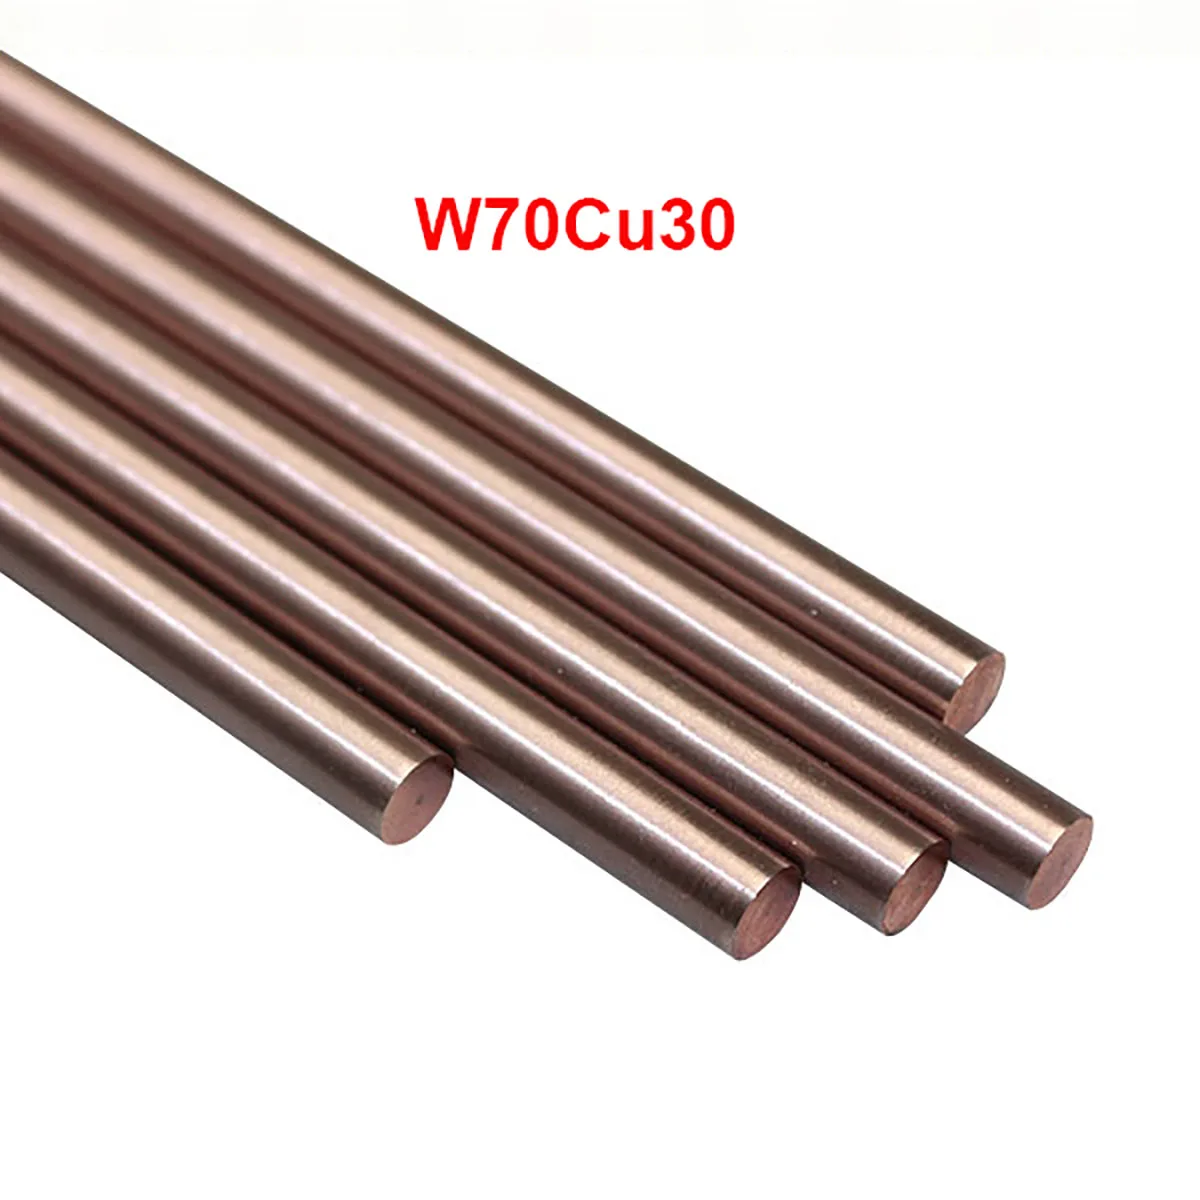 

W70 Bar W70Cu30 Tungsten Copper Alloy Bar Rod Spot Welding Electrode Rod DIY Material Length 100/200mm Diameter 1 to 10mm